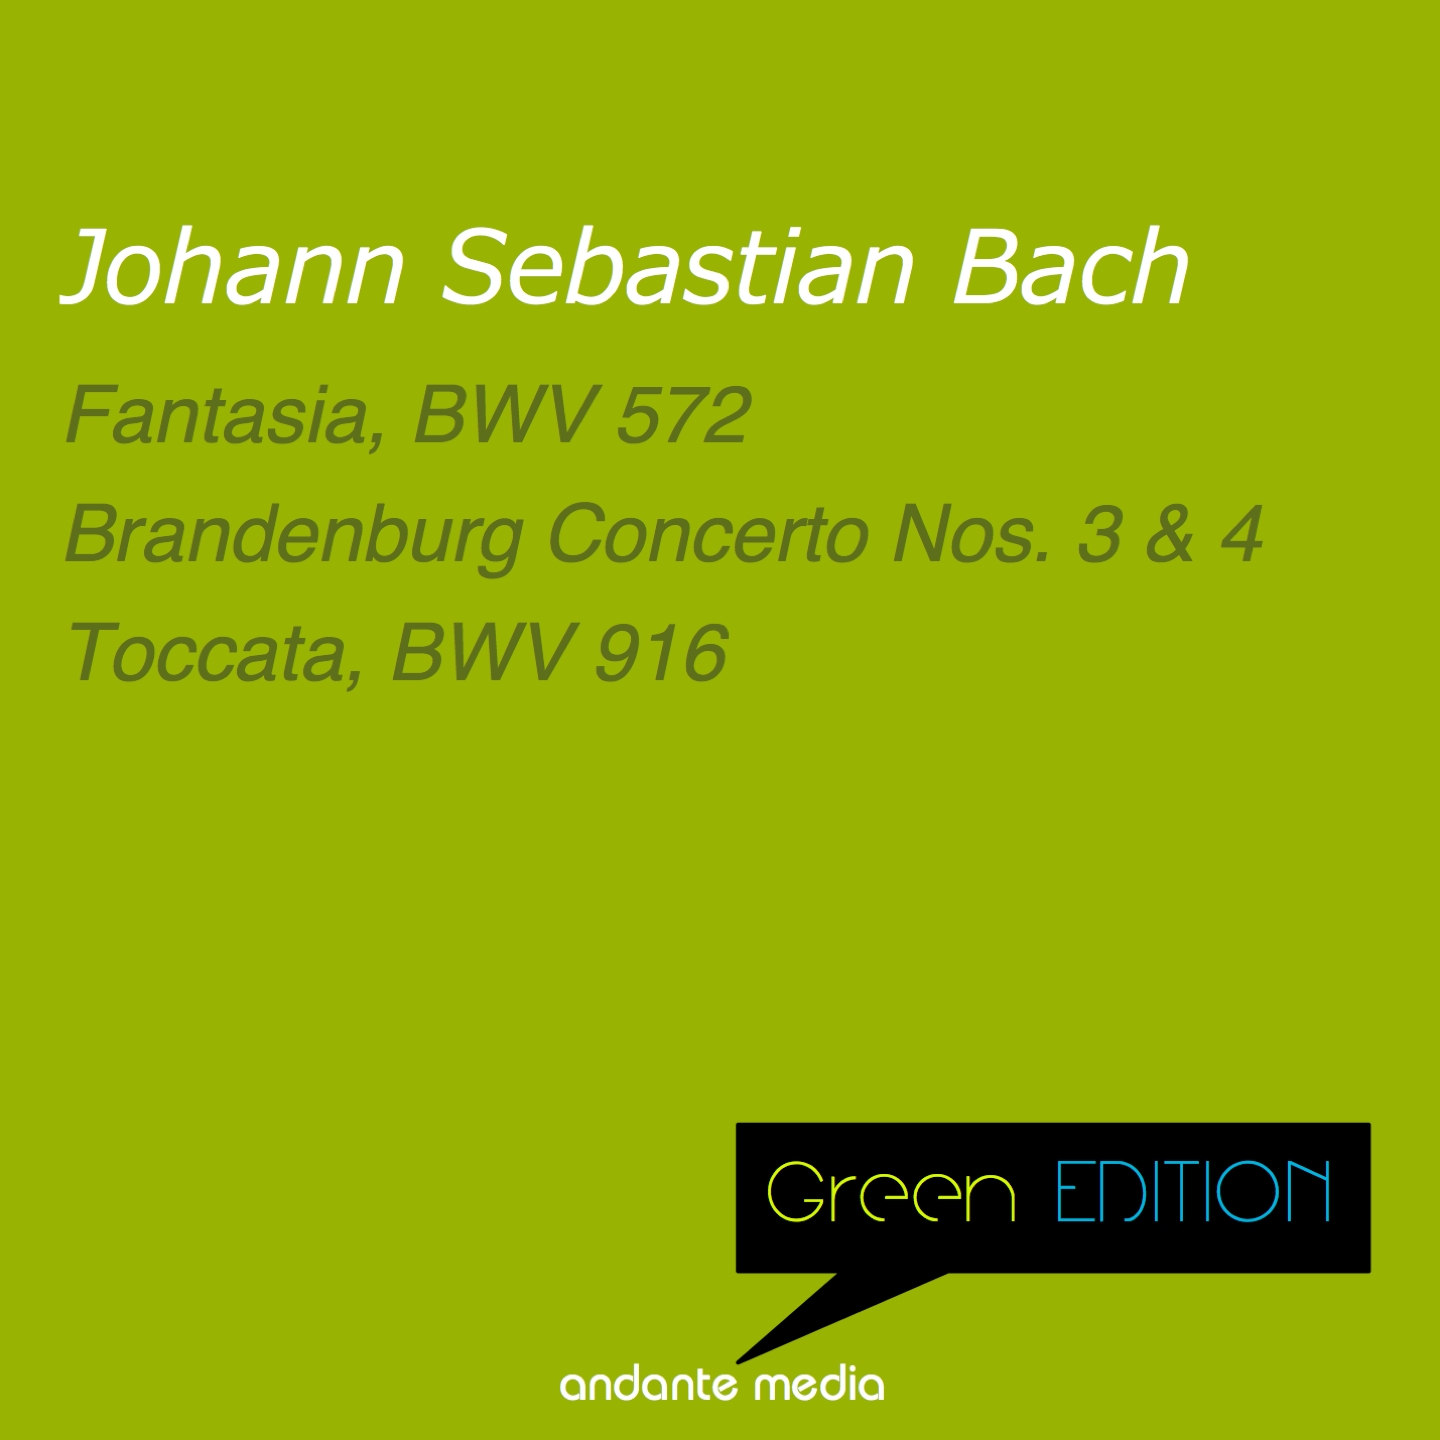 Toccata in G Major, BWV 916: I. Presto